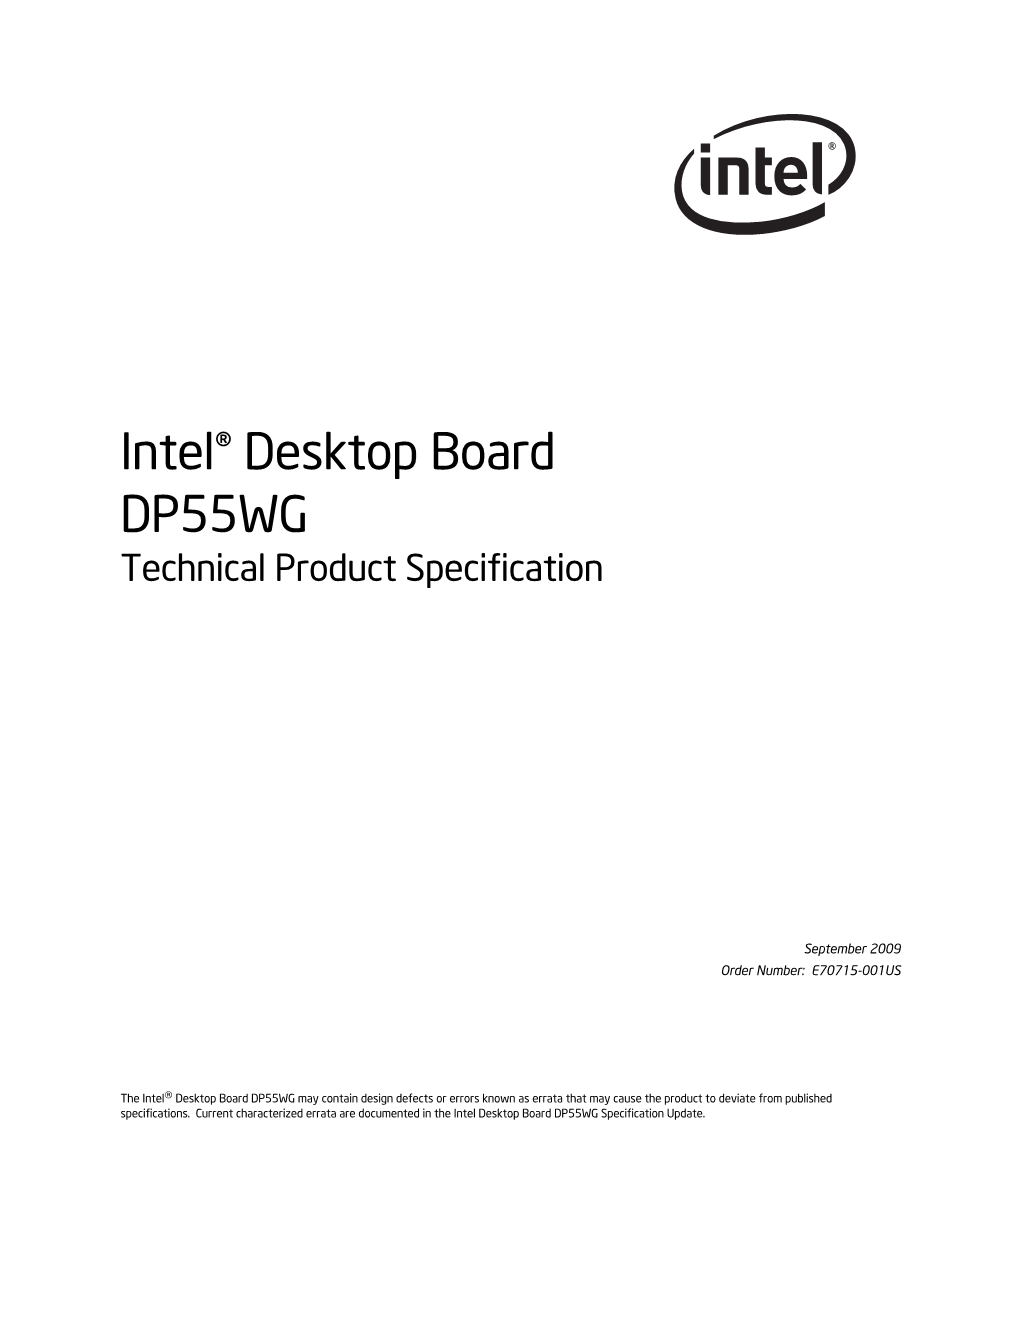 Intel® Desktop Board DP55WG Technical Product Specification